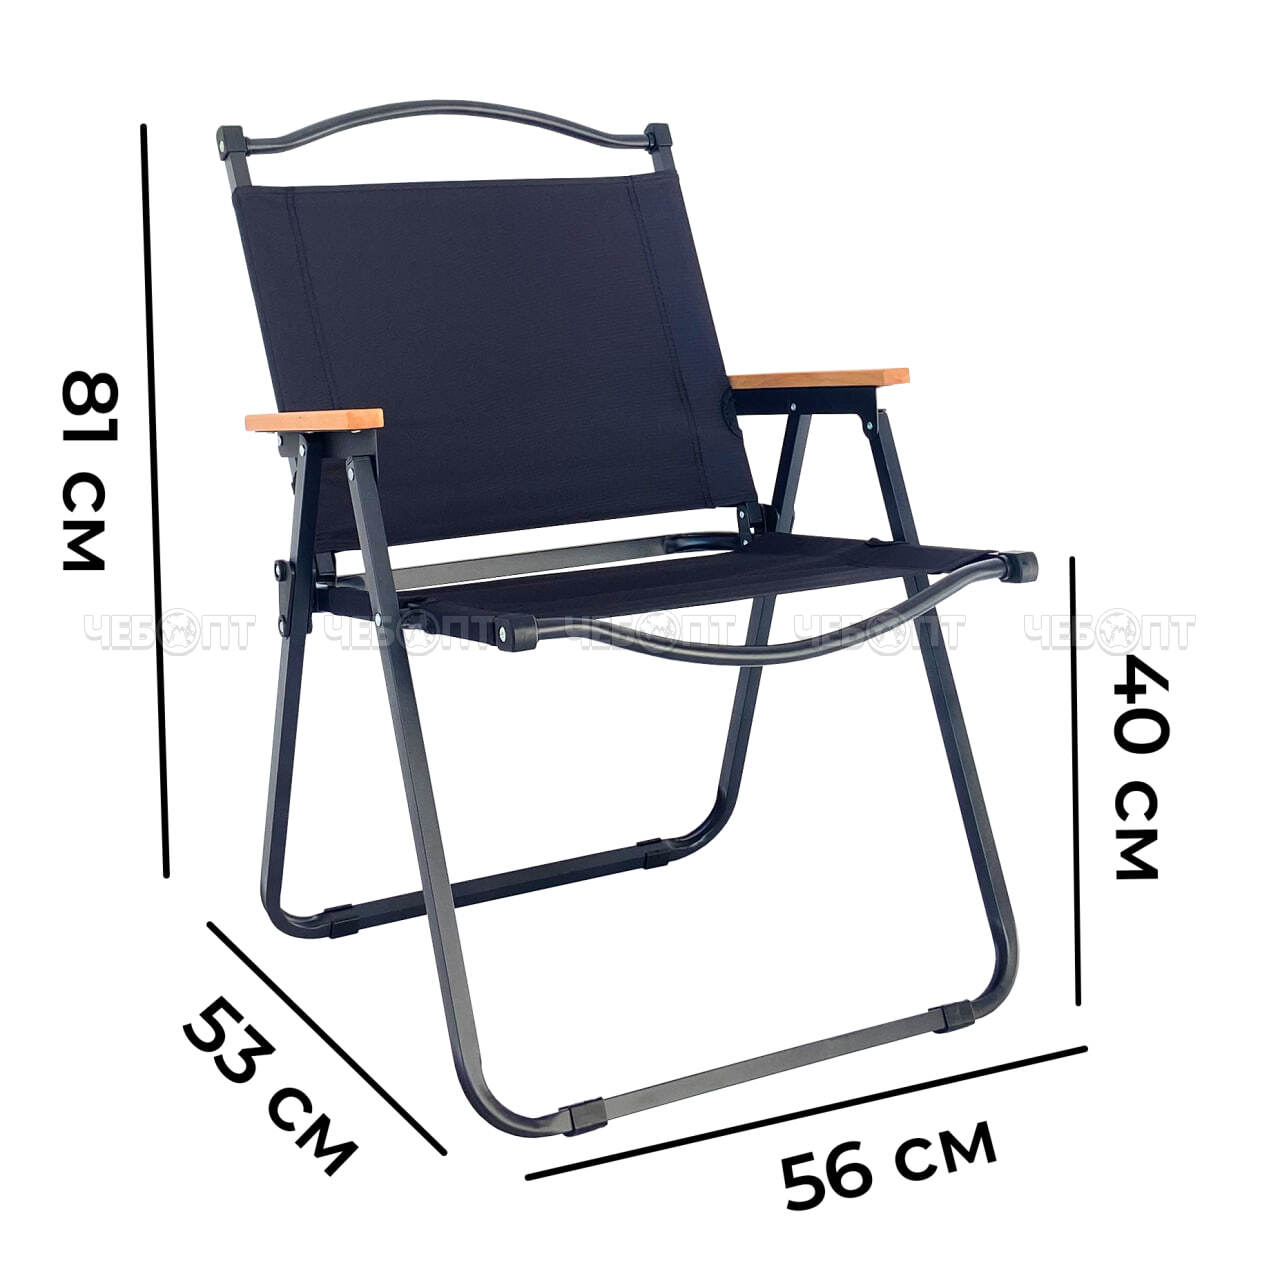 Кресло - складное БОЛЬШОЕ 560*530*810 мм, ткань Оксфорд 600D, стальной каркас с подлок., нагрузка до 120 кг, черный/бежевый арт. 290029 $ [1] GOODSEE. ЧЕБОПТ.